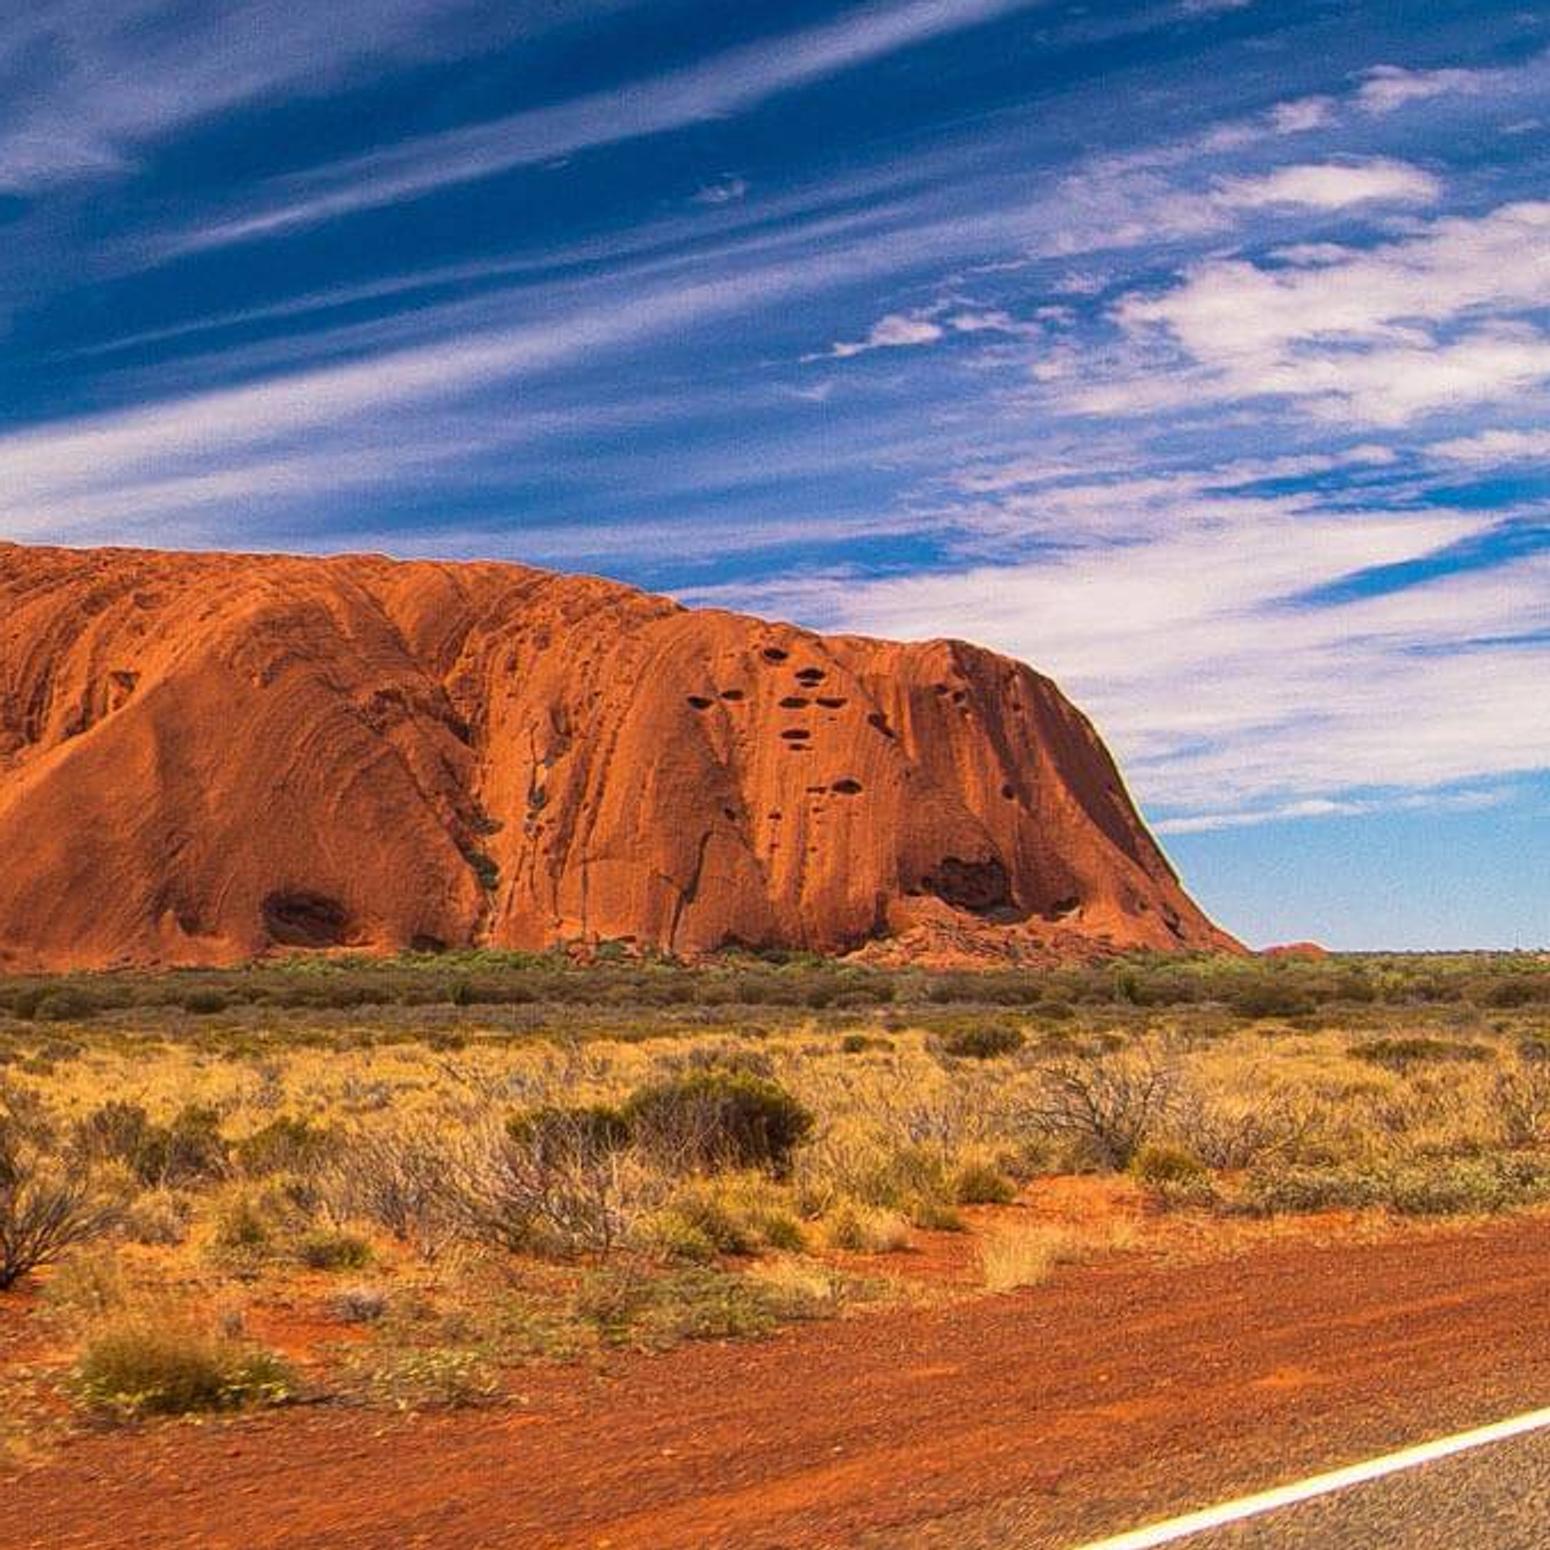 Bild zeigt einen Berg in der australischen Wüste